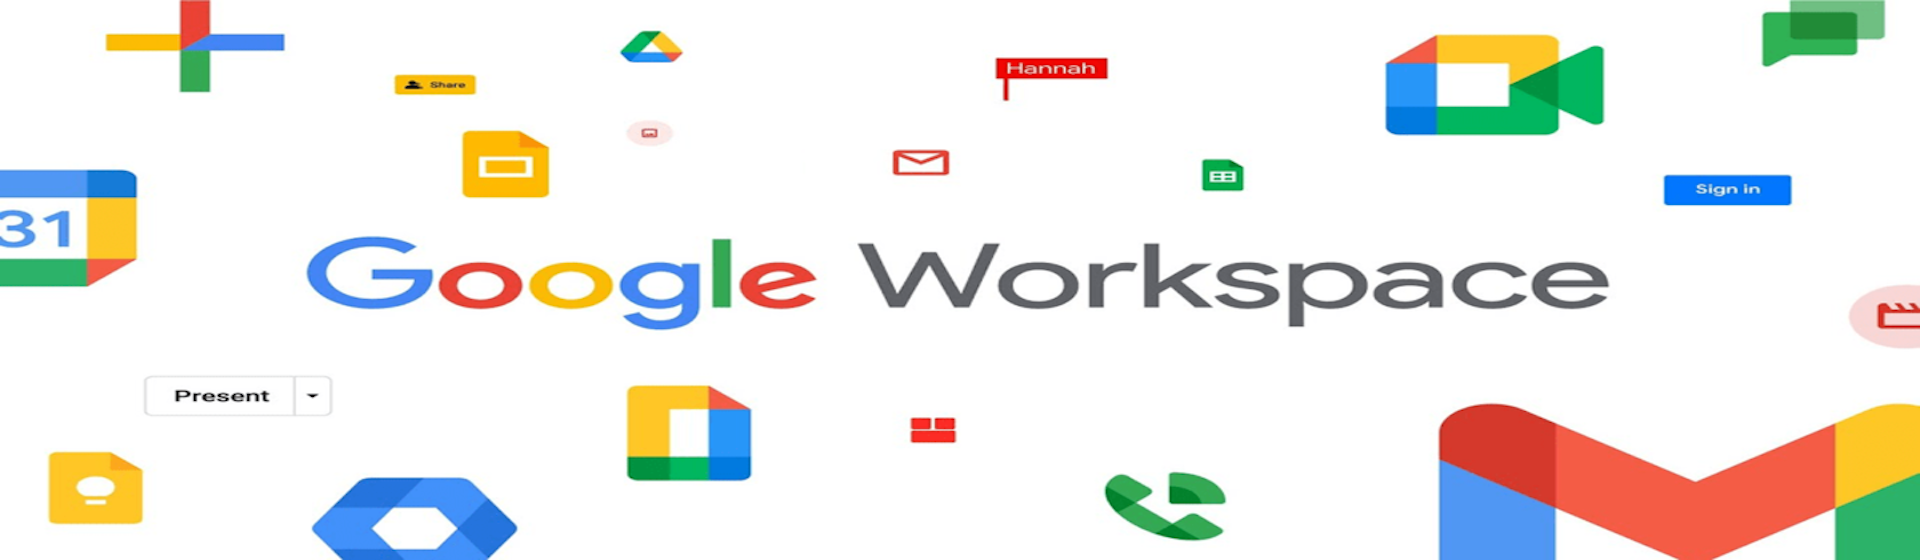 Google revoluciona el trabajo colaborativo con Smart Canvas en Workspace